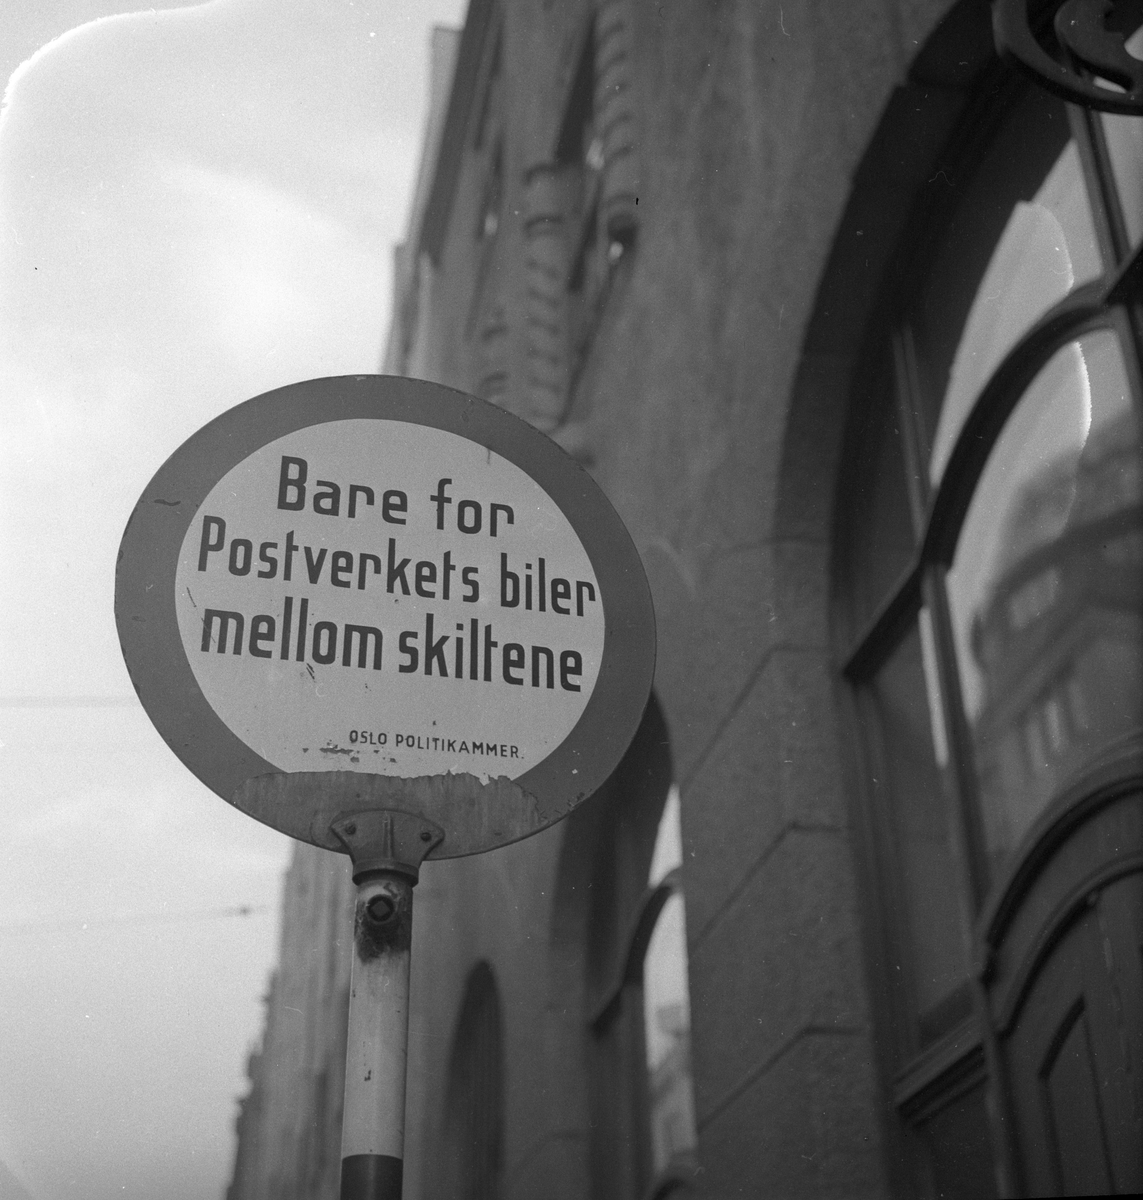 Trafikkskilt "Bare for Postverkets biler mellom skiltene. Oslo Politikammer", Oslo.